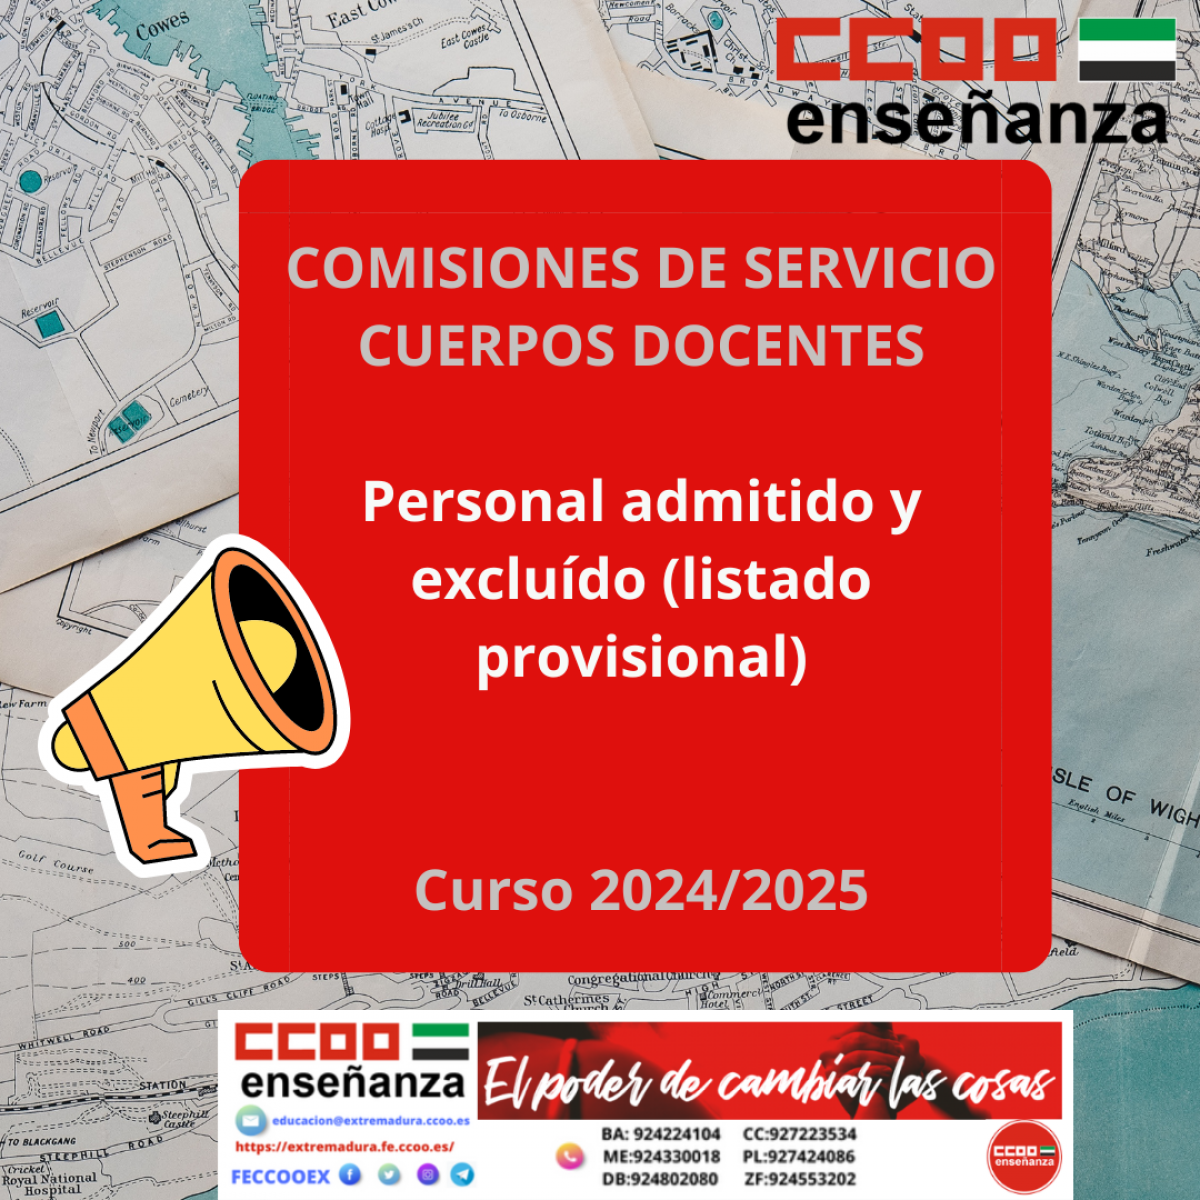 Comisiones de servicio:  Personal admitido y excluido (listado provisional) curso 2024-2025